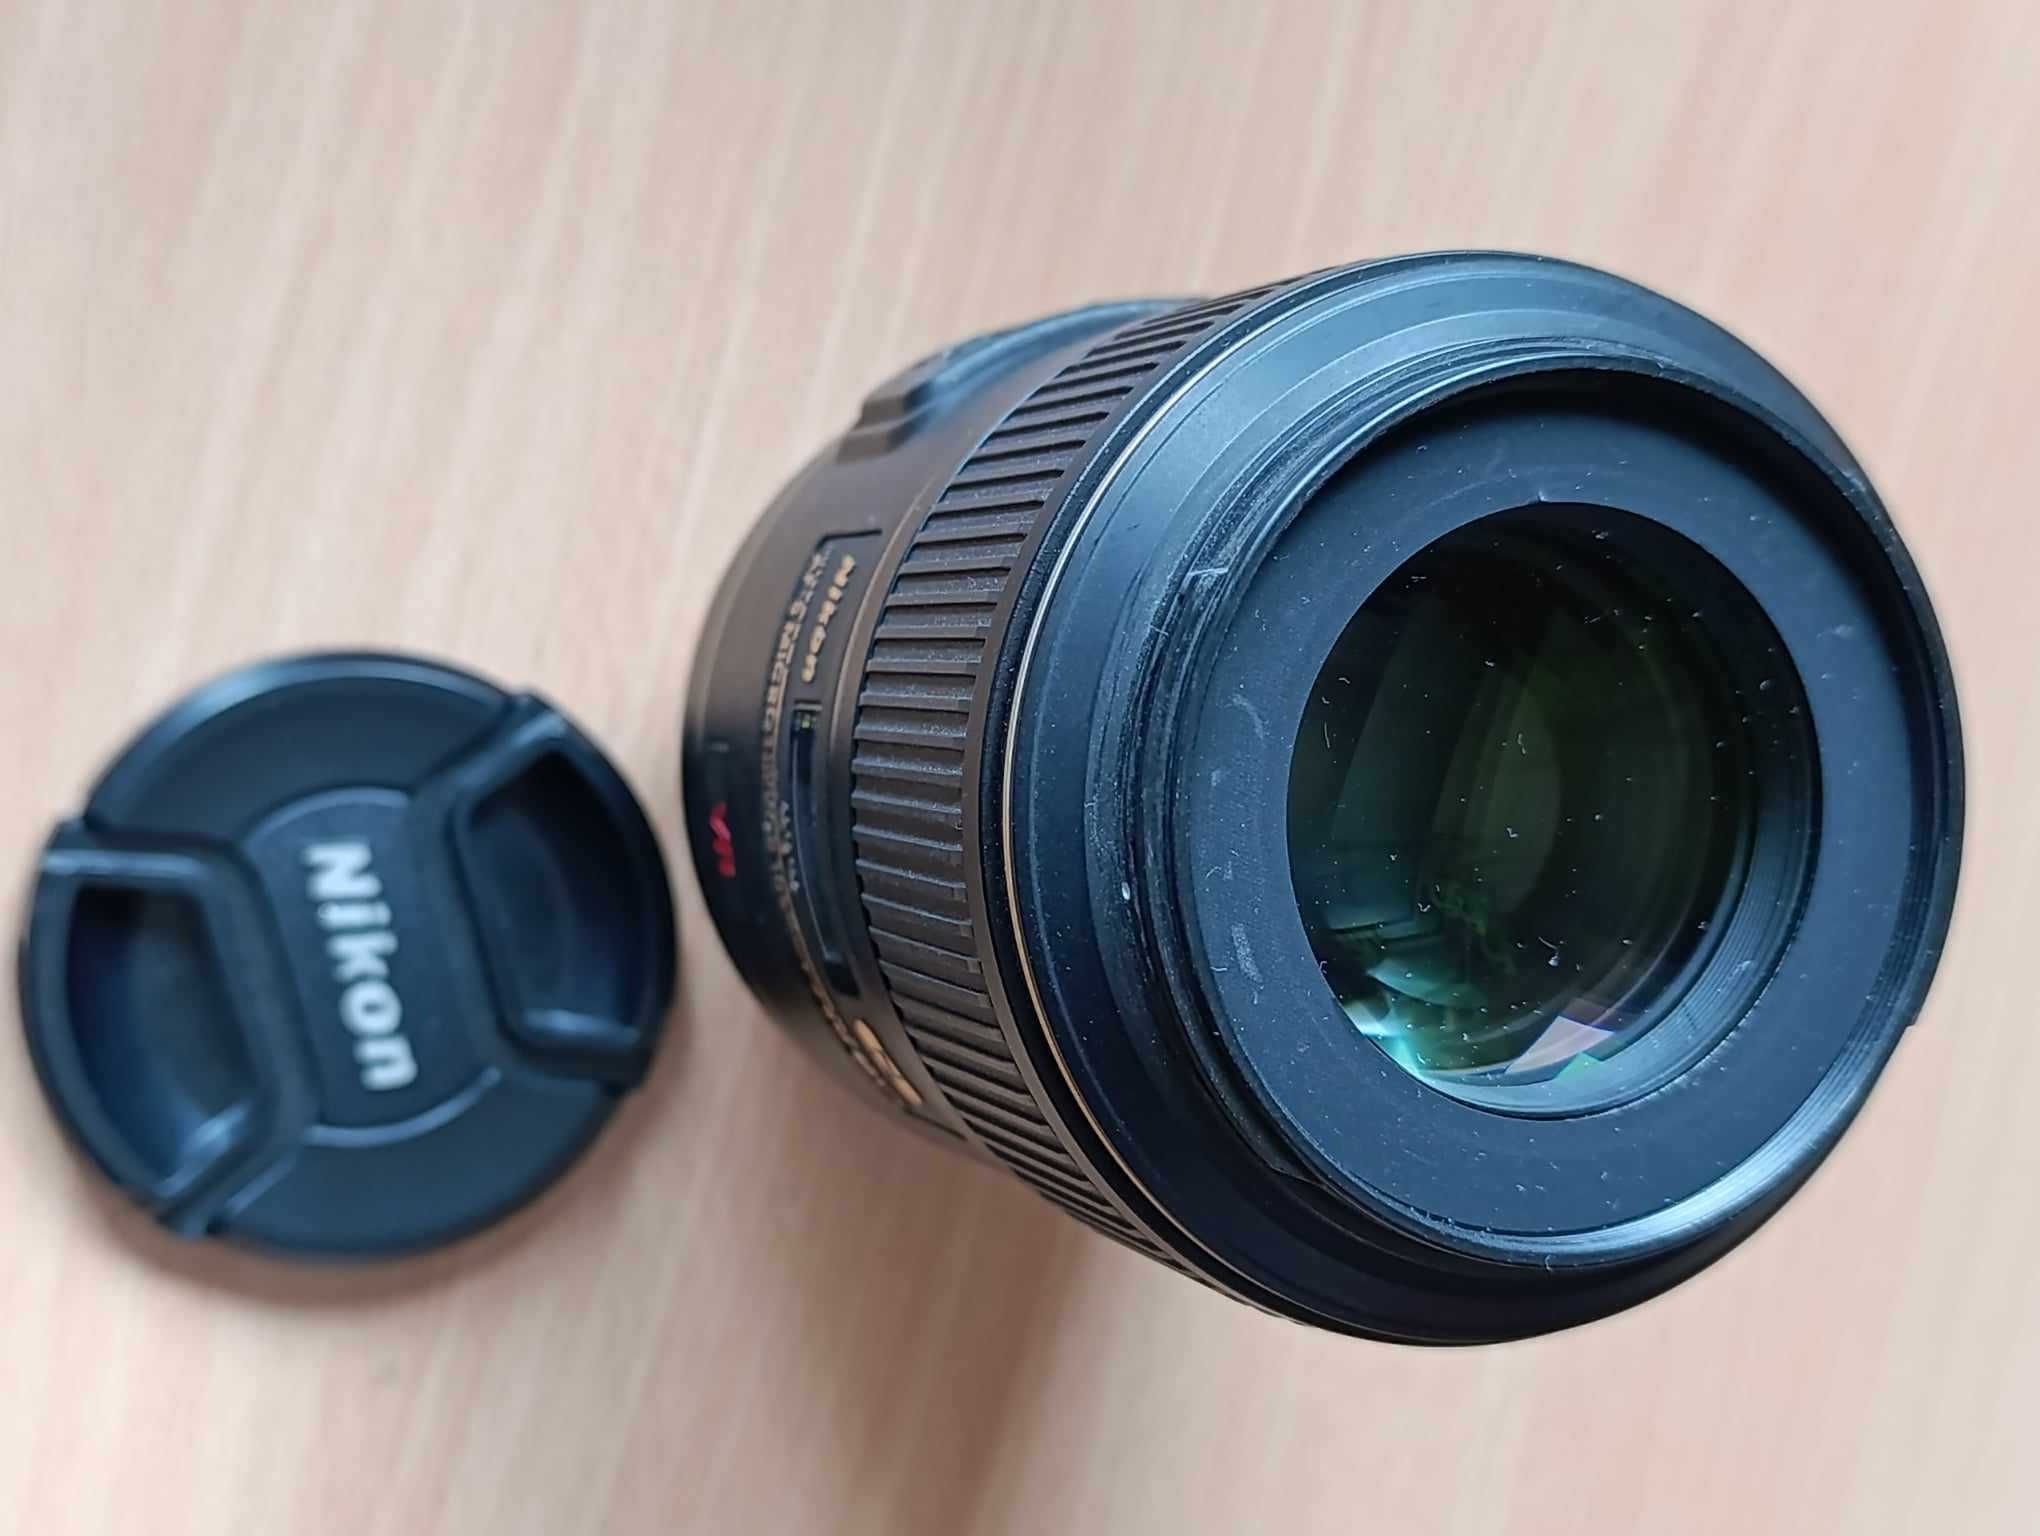 Obiektyw Nikon AF-S Micro-Nikkor 105mm 2.8G IF-ED jak nowy